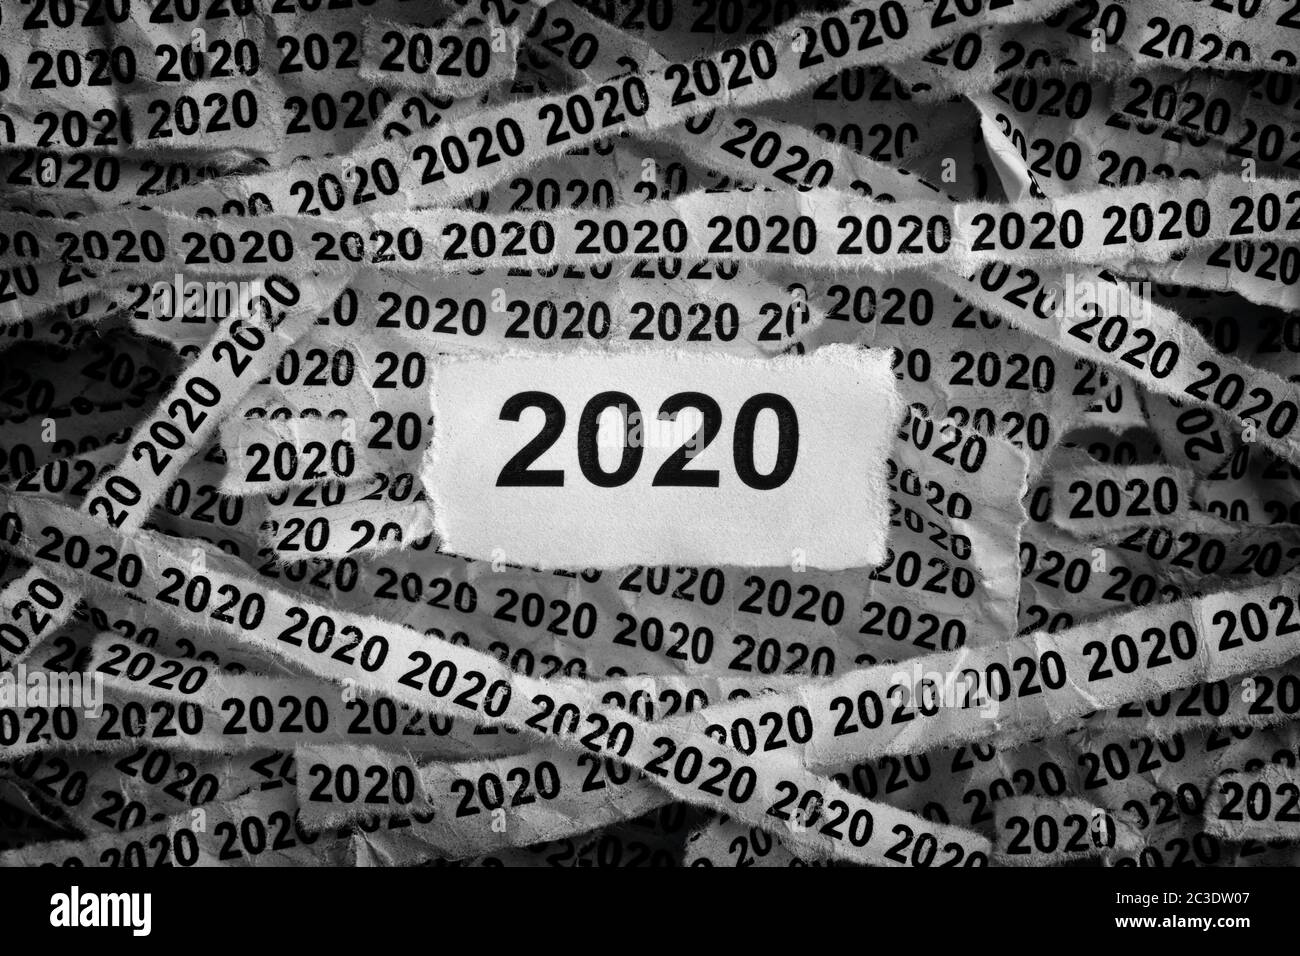 L'année 2020. Morceaux de papier déchirés portant les numéros 2020. Noir et blanc. Gros plan. Banque D'Images